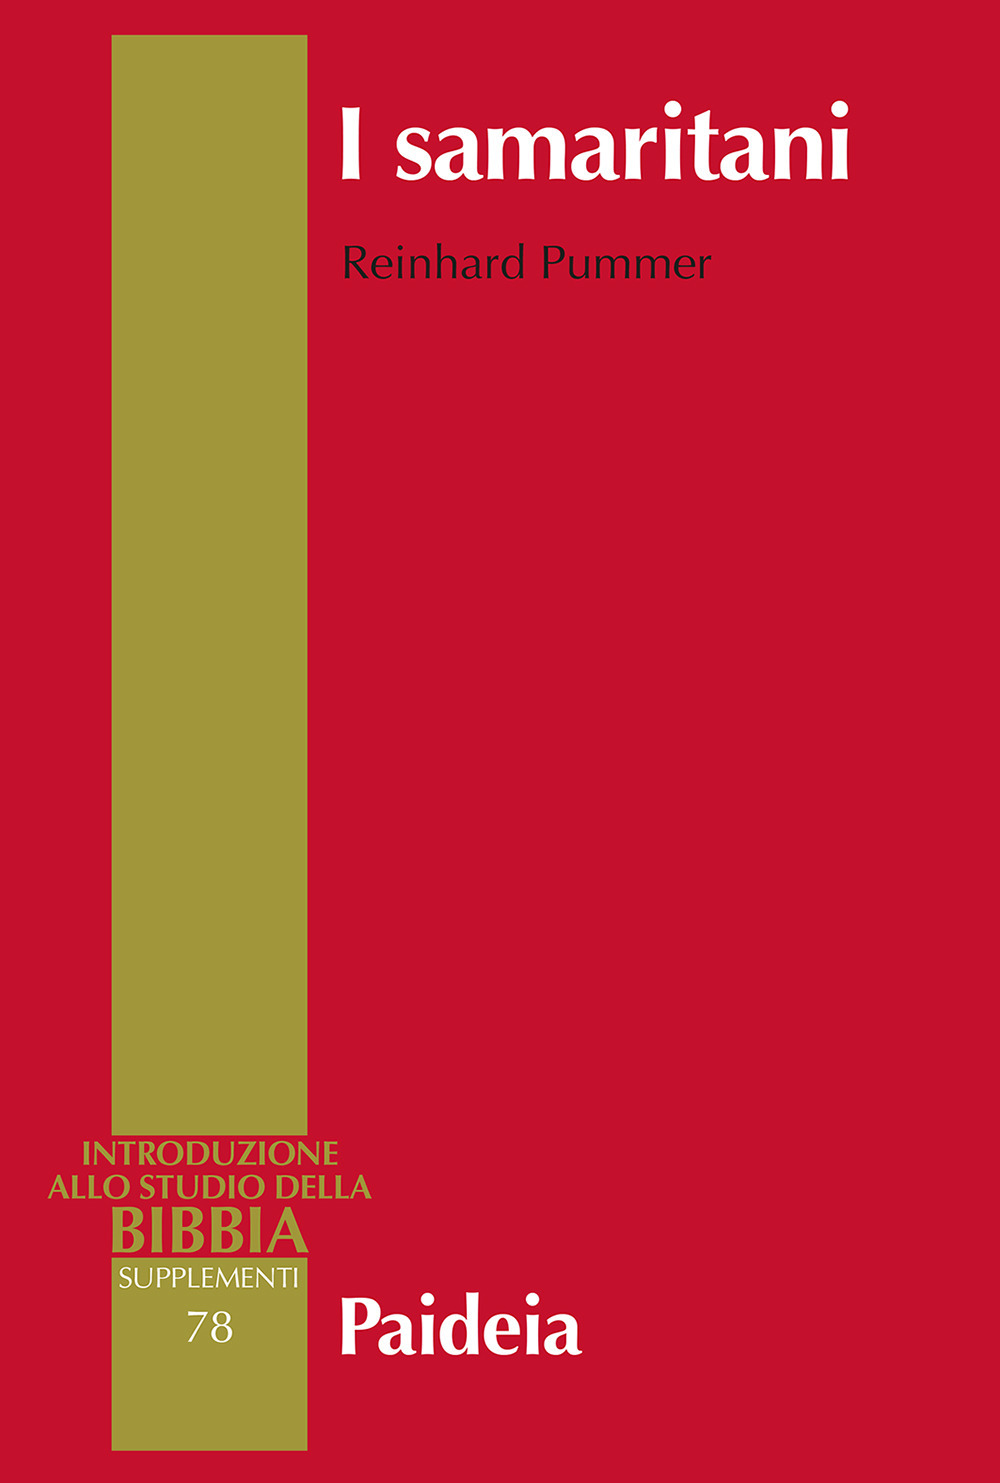 Libri Pummer Reinhard - I Samaritani. Storia, Cultura, Letteratura NUOVO SIGILLATO, EDIZIONE DEL 11/11/2022 SUBITO DISPONIBILE